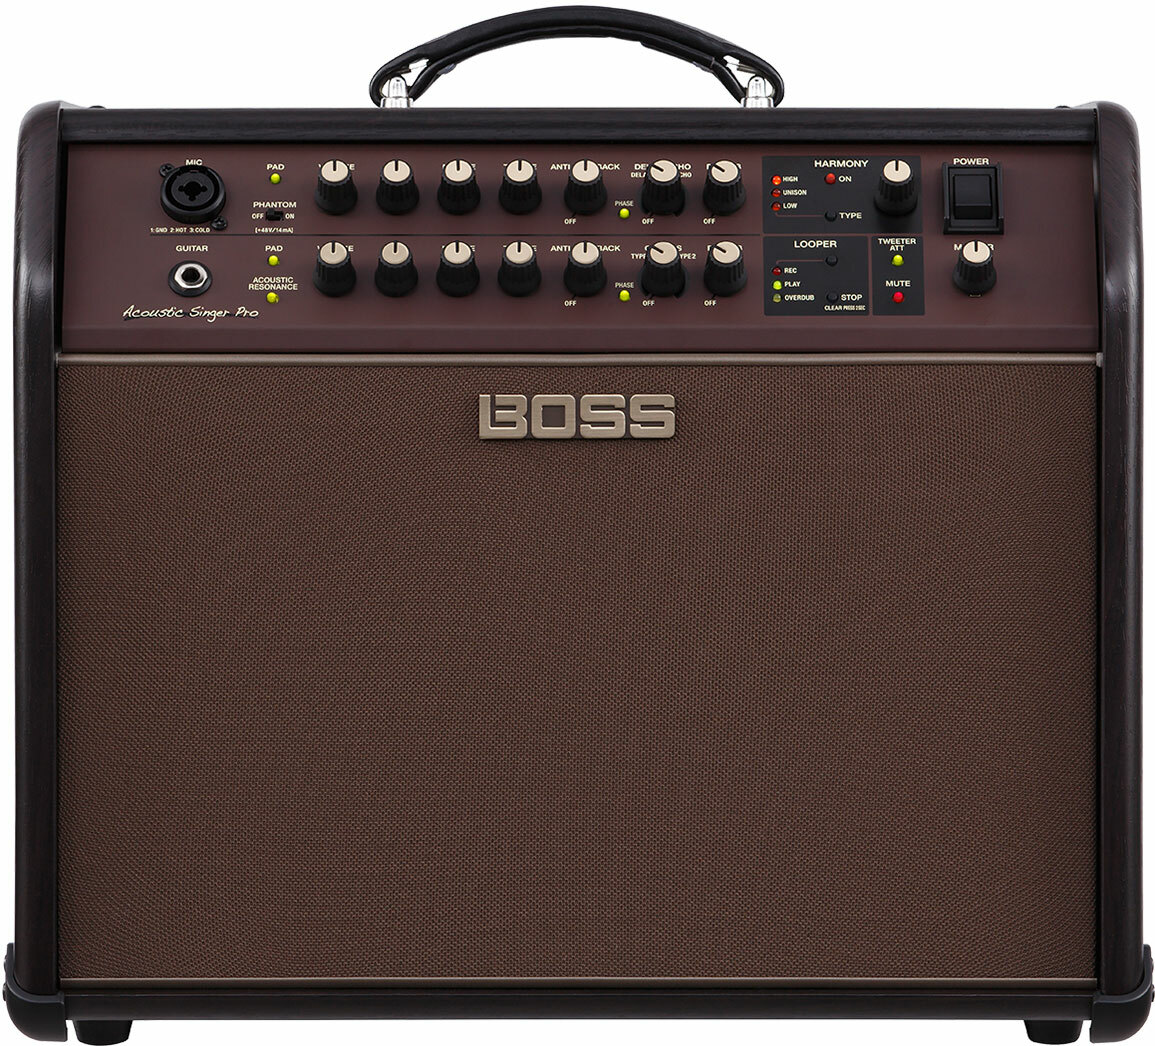 Boss Acoustic Singer Pro 120w 1x8 - Combo voor akoestische gitaar - Main picture